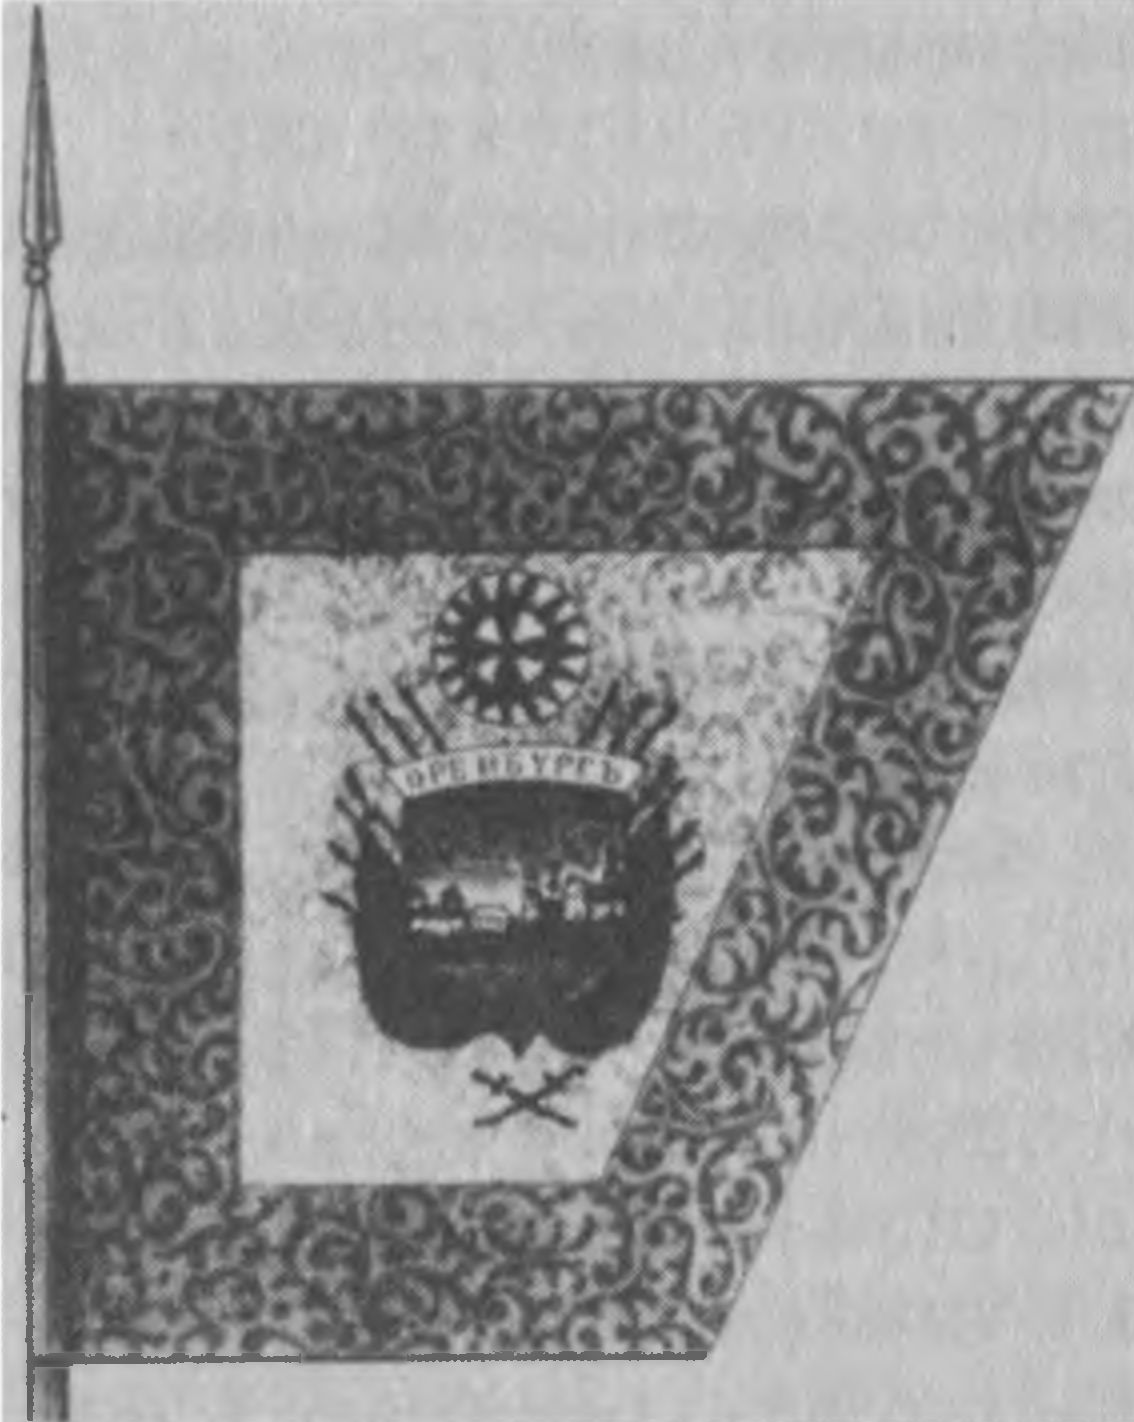 Войсковое знамя Оренбургского казачьего войска (пожаловано 21 мая 1756 г).